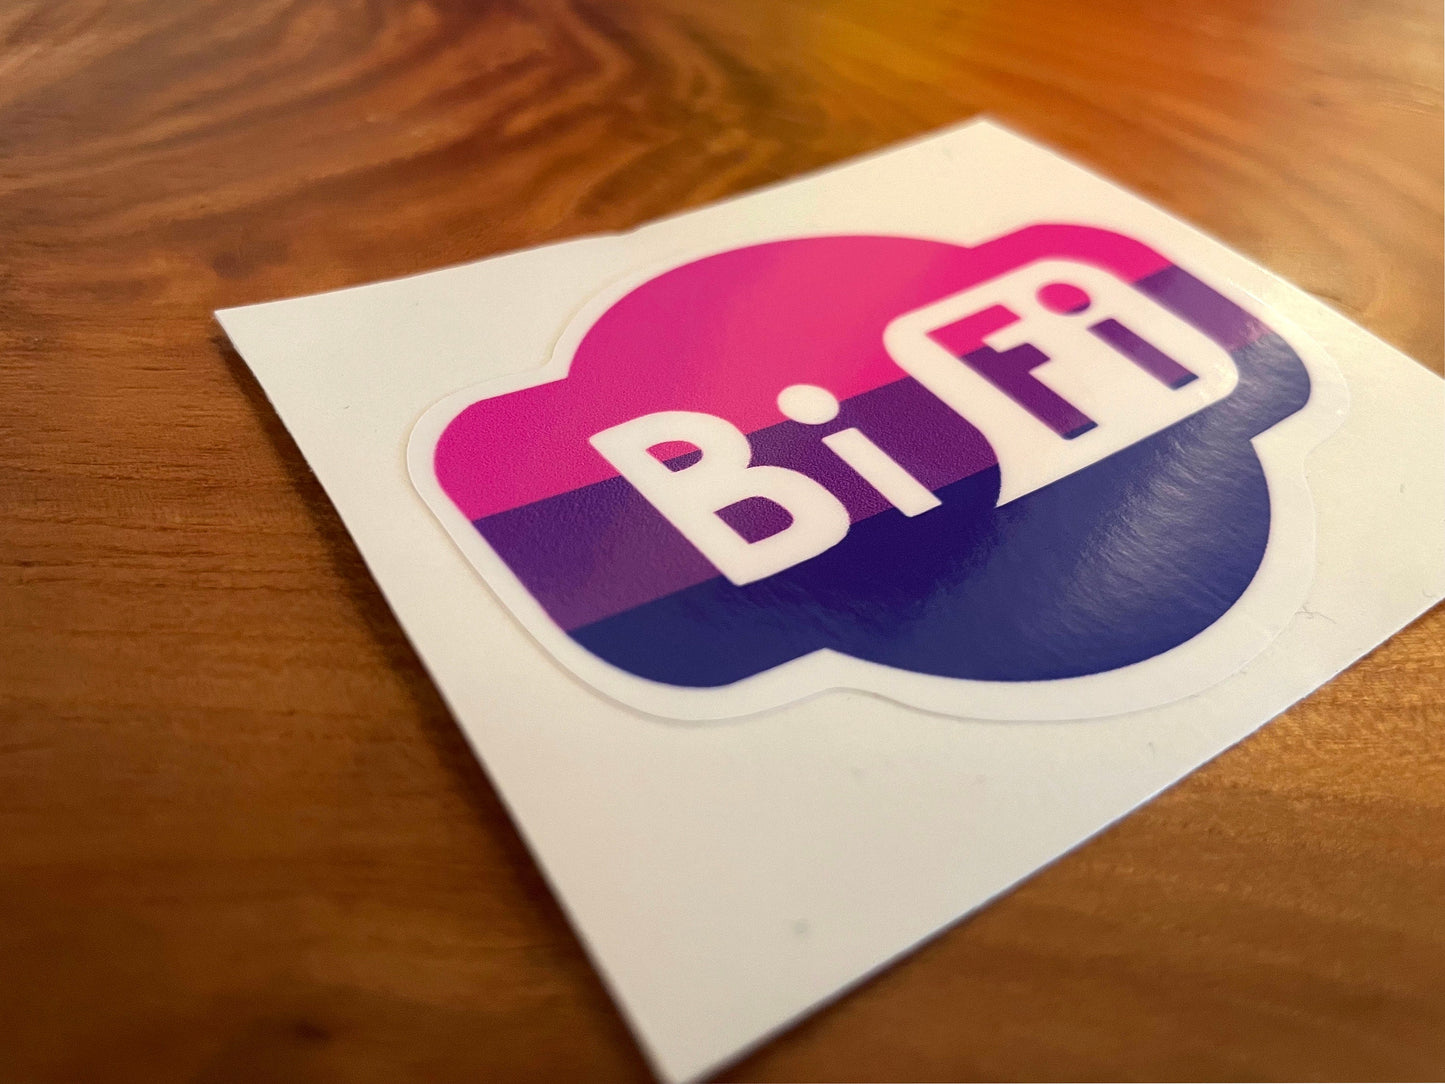 Bisexual Pride Sticker/ BiFi Weatherproof Die-Cut Sticker/ BiFi Die-Cut Sticker/ Bisexual Pride Flag Sticker/ BiFi Sticker